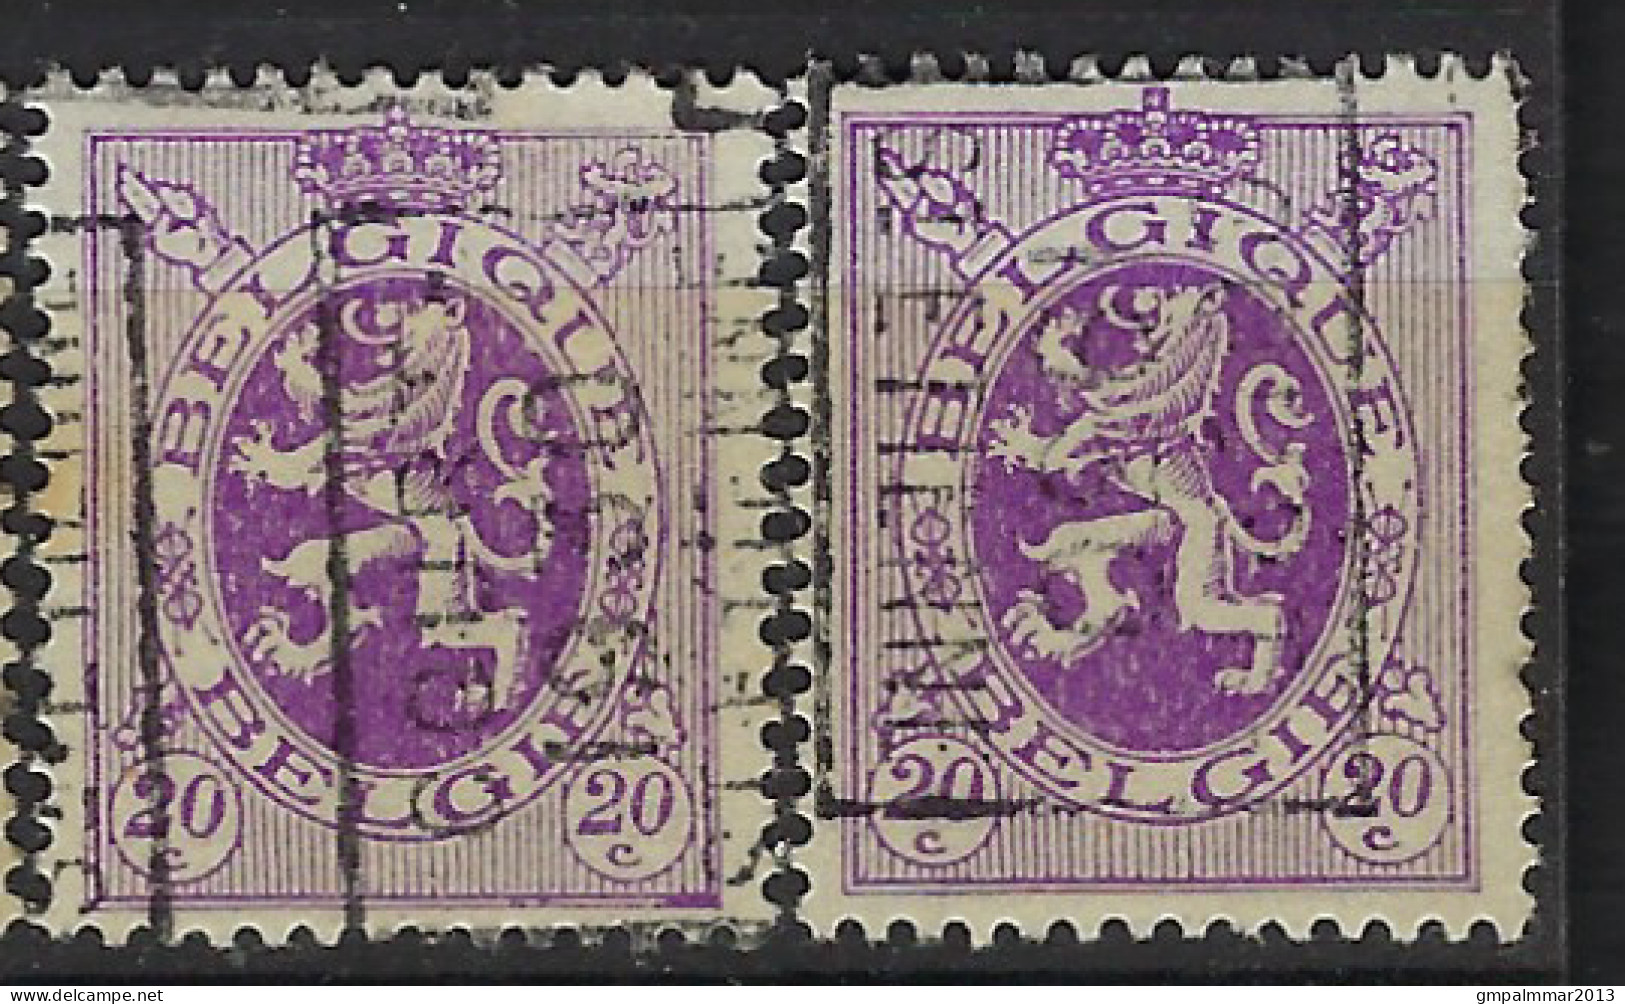 Zegel Nr. 281 Voorafgestempeld Nr. 5876  A + B    COURT ST ETIENNE 1930  ; Staat Zie Scan ! LOT 348 - Rollenmarken 1930-..